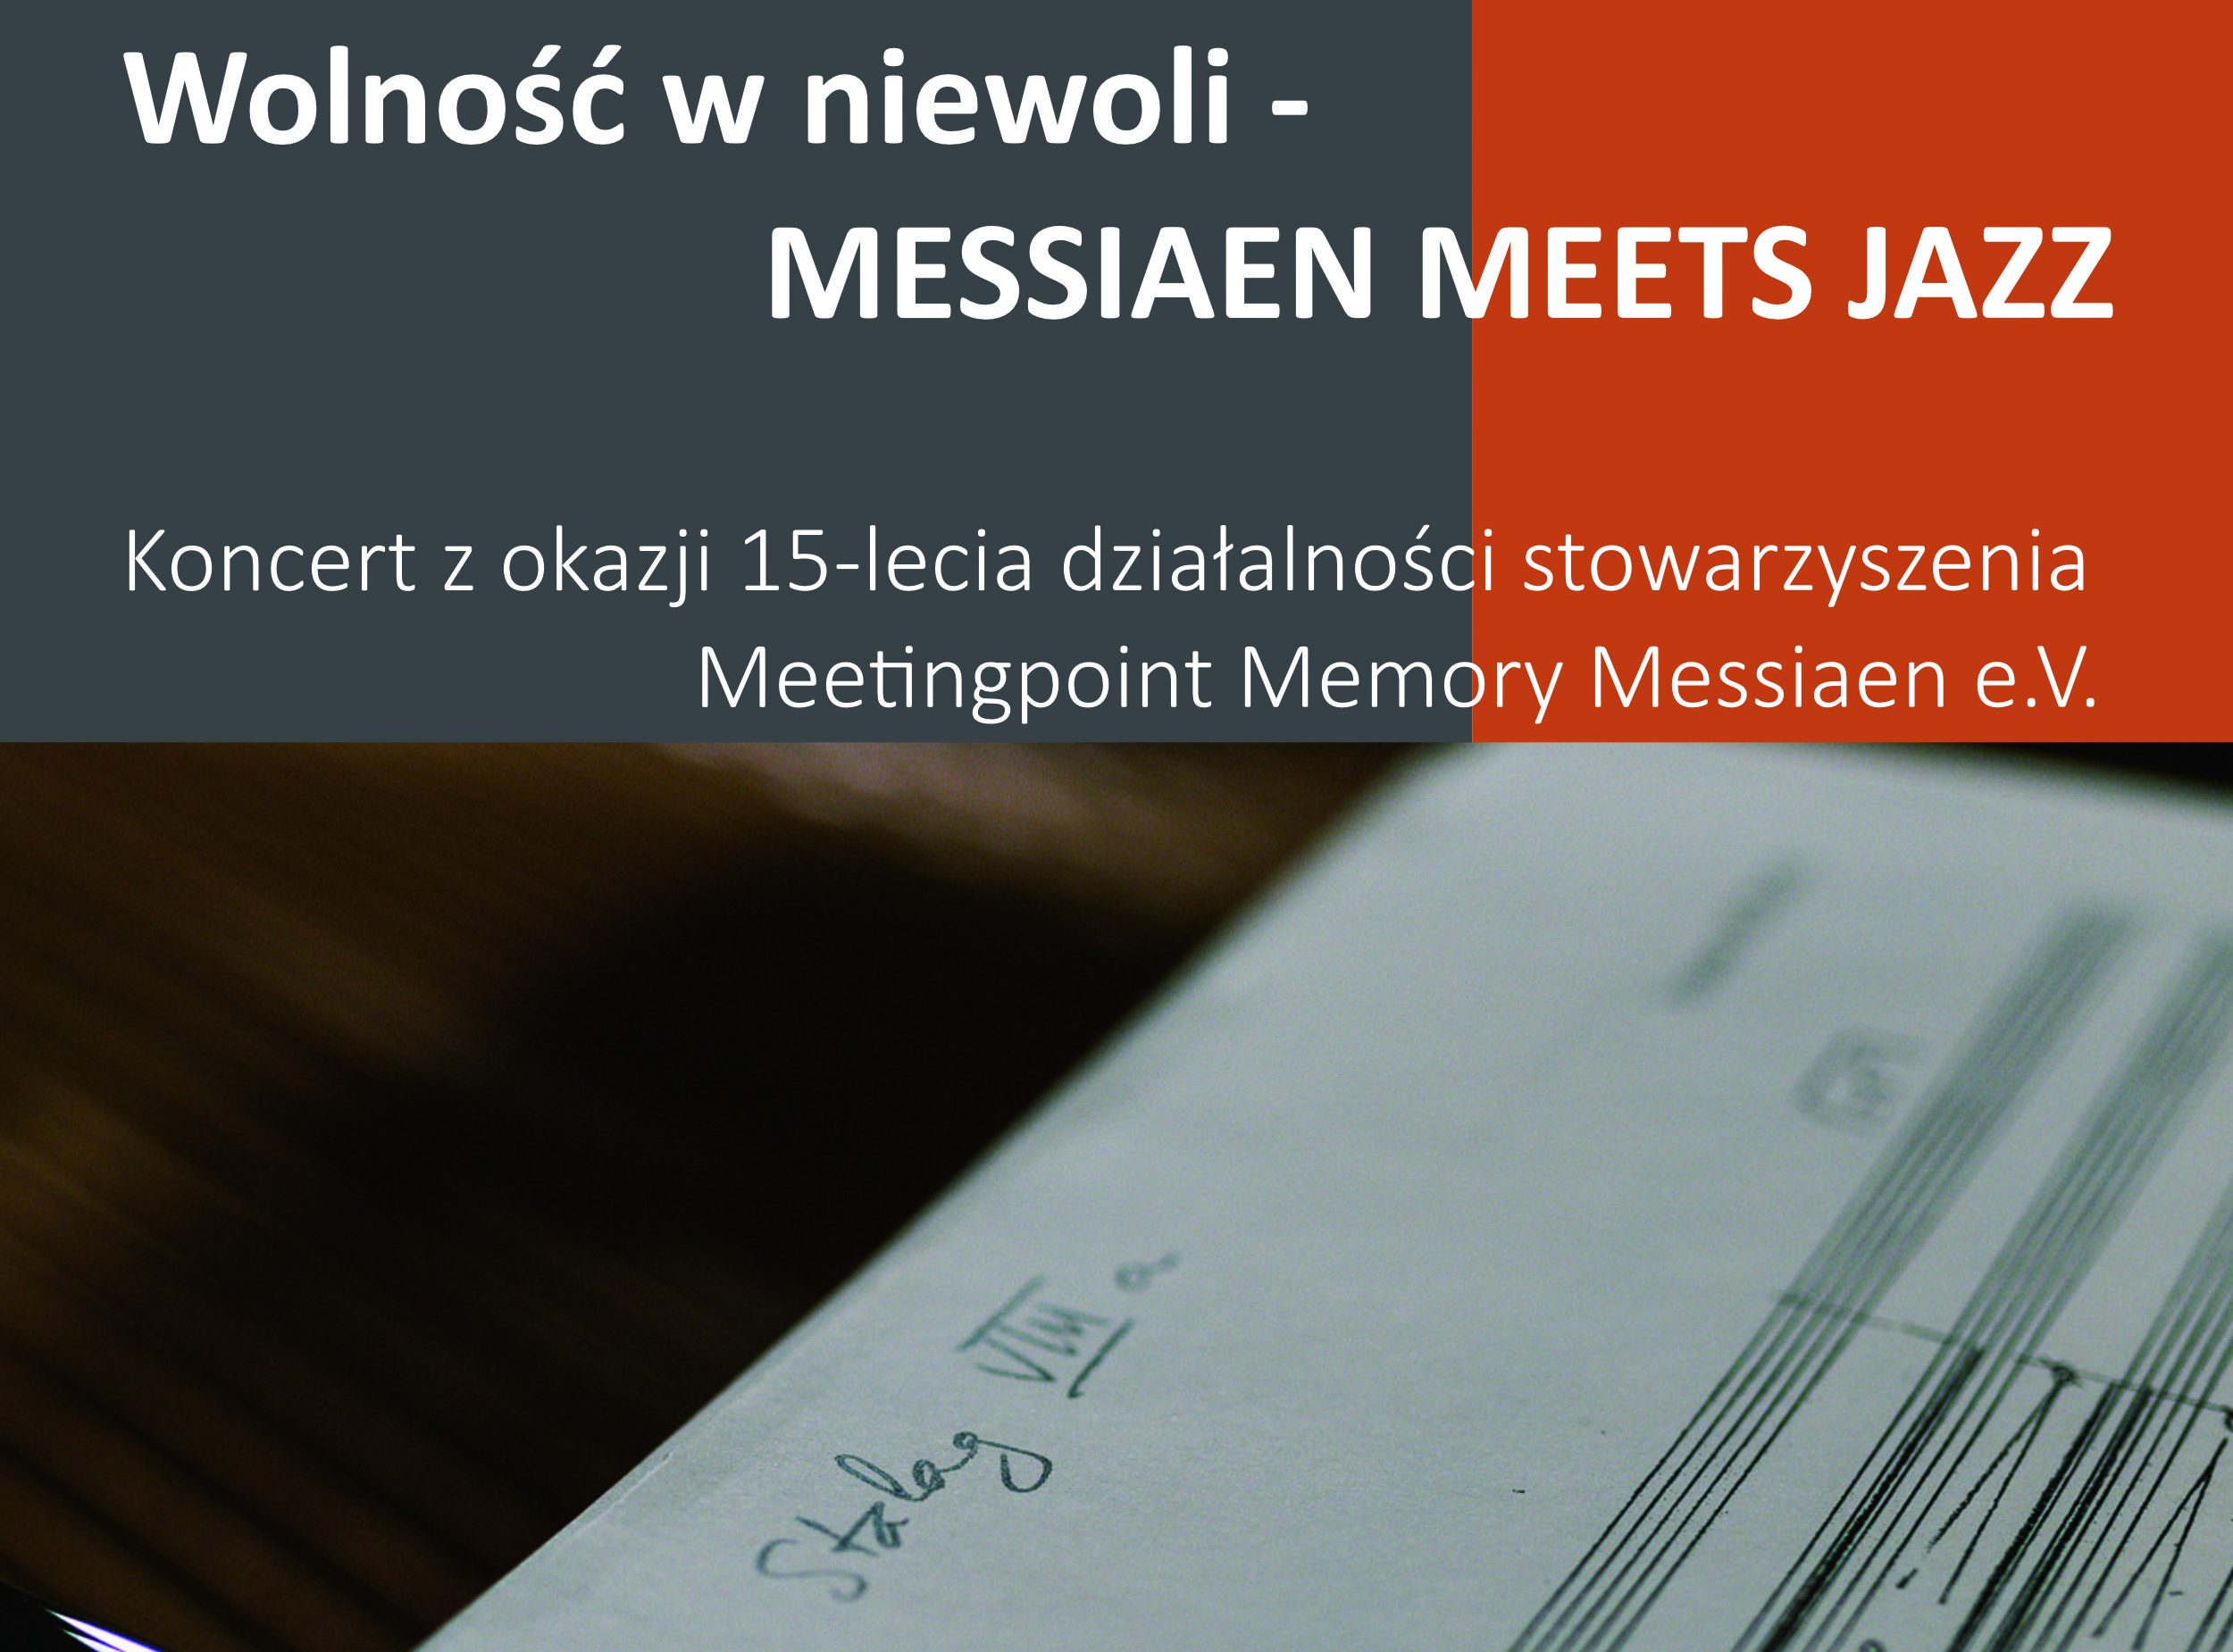 „Wolność w niewoli – MESSIAEN MEETS JAZZ“ – koncert z okazji 15-lecia działalności stowarzyszenia Meetingpoint Memory Messiaen